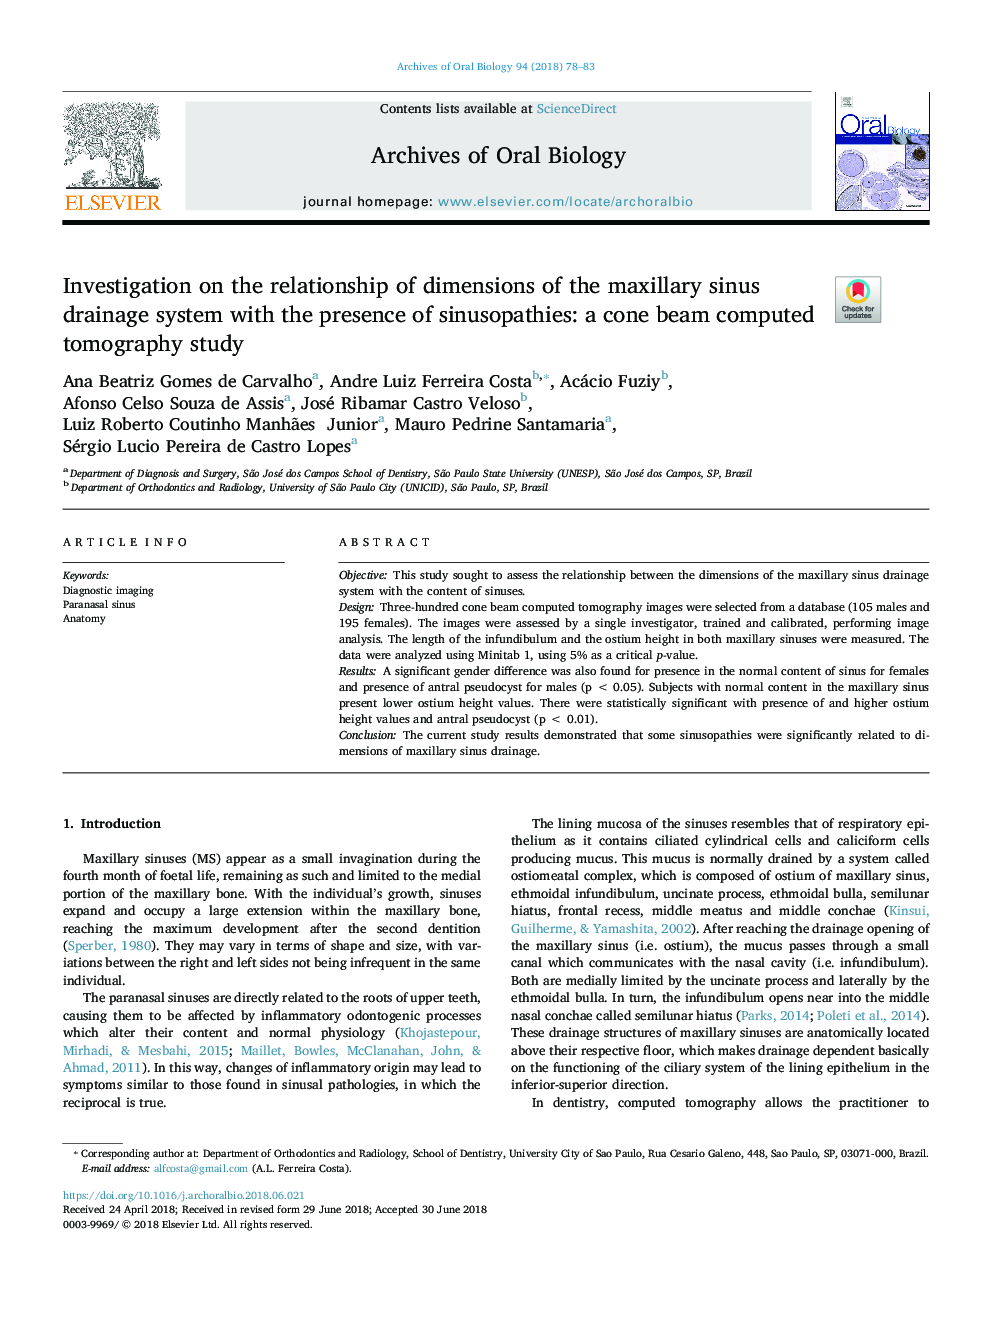 بررسی رابطه ابعاد سیستم تخلیه سینوس ماگزیلاری با حضور سینوزوپاتی: مطالعه توموگرافی پرتو مخروطی 